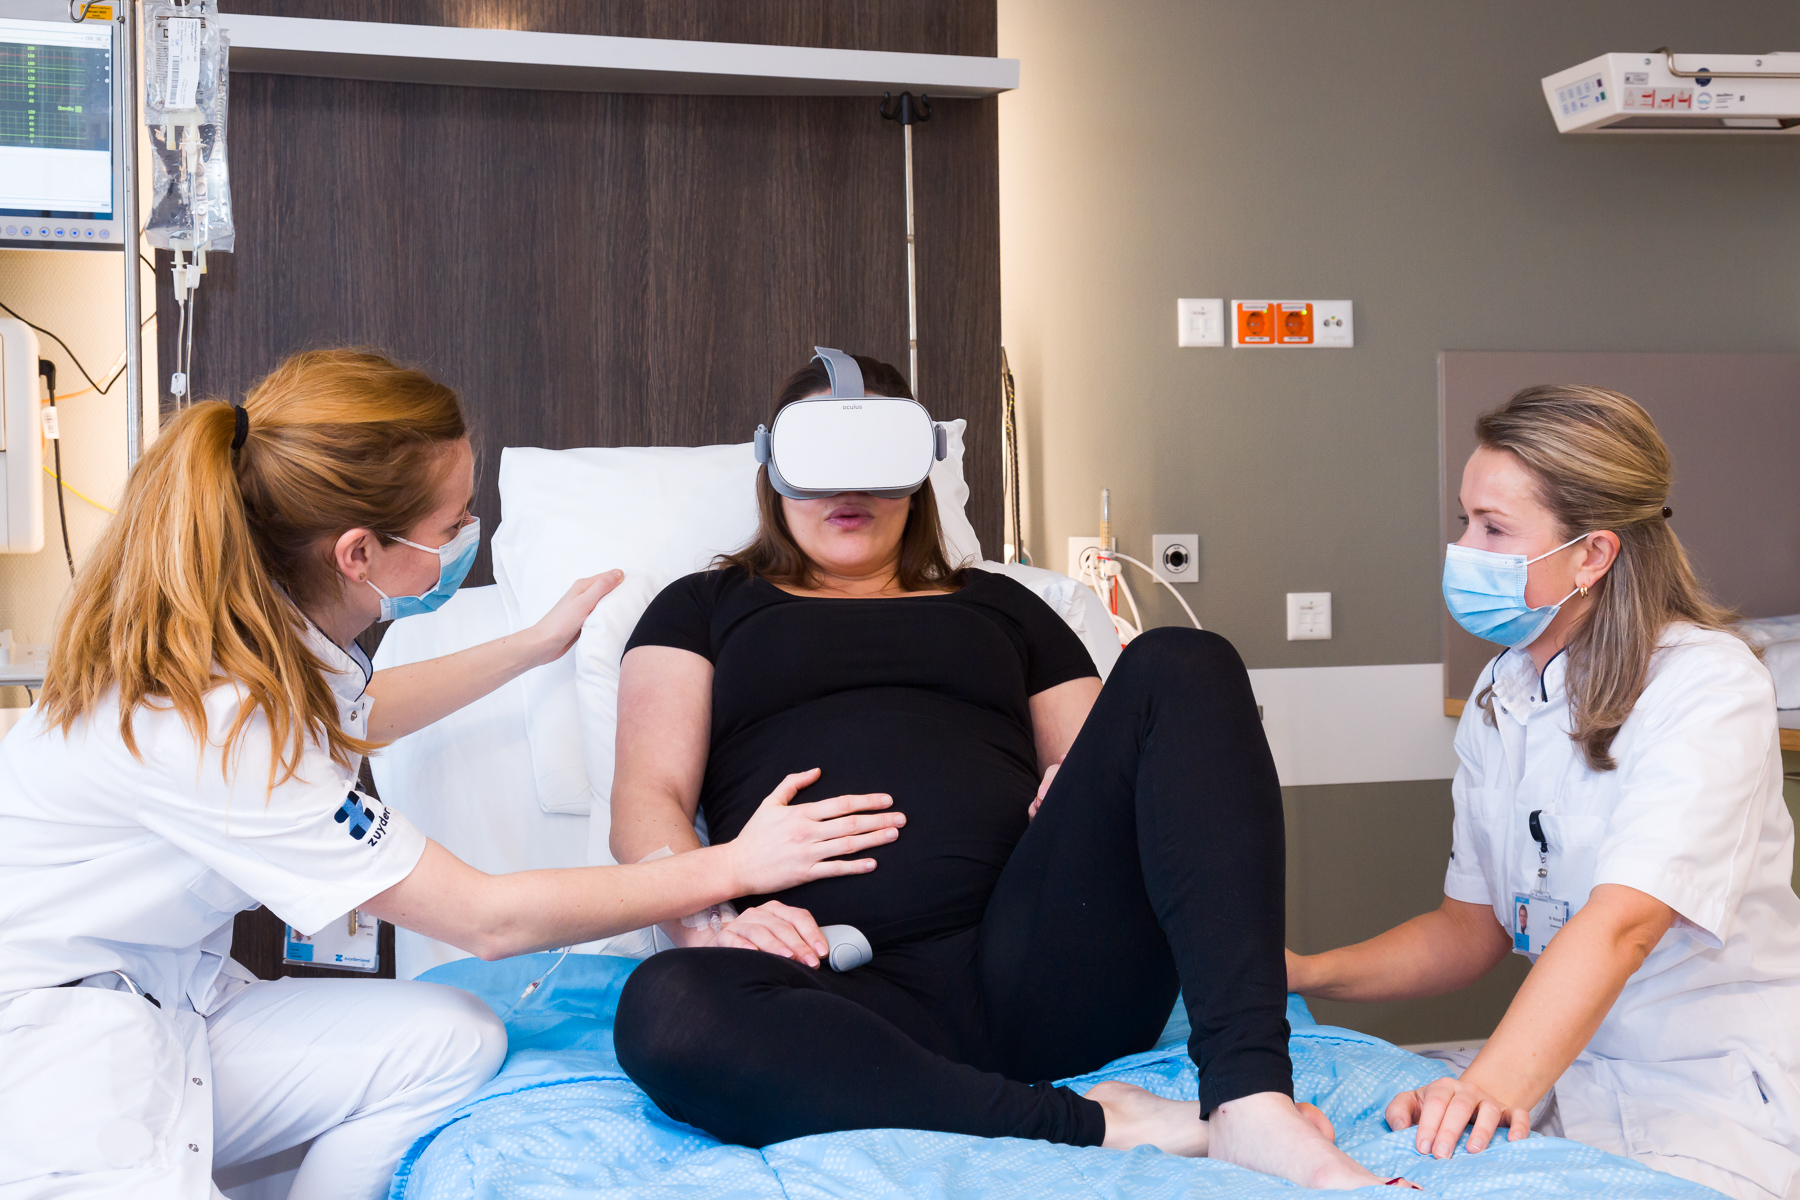 Onderzoek met virtual reality zuyderland ziekenhuis Martine Wassen Anne- Claire Musters De Limburger